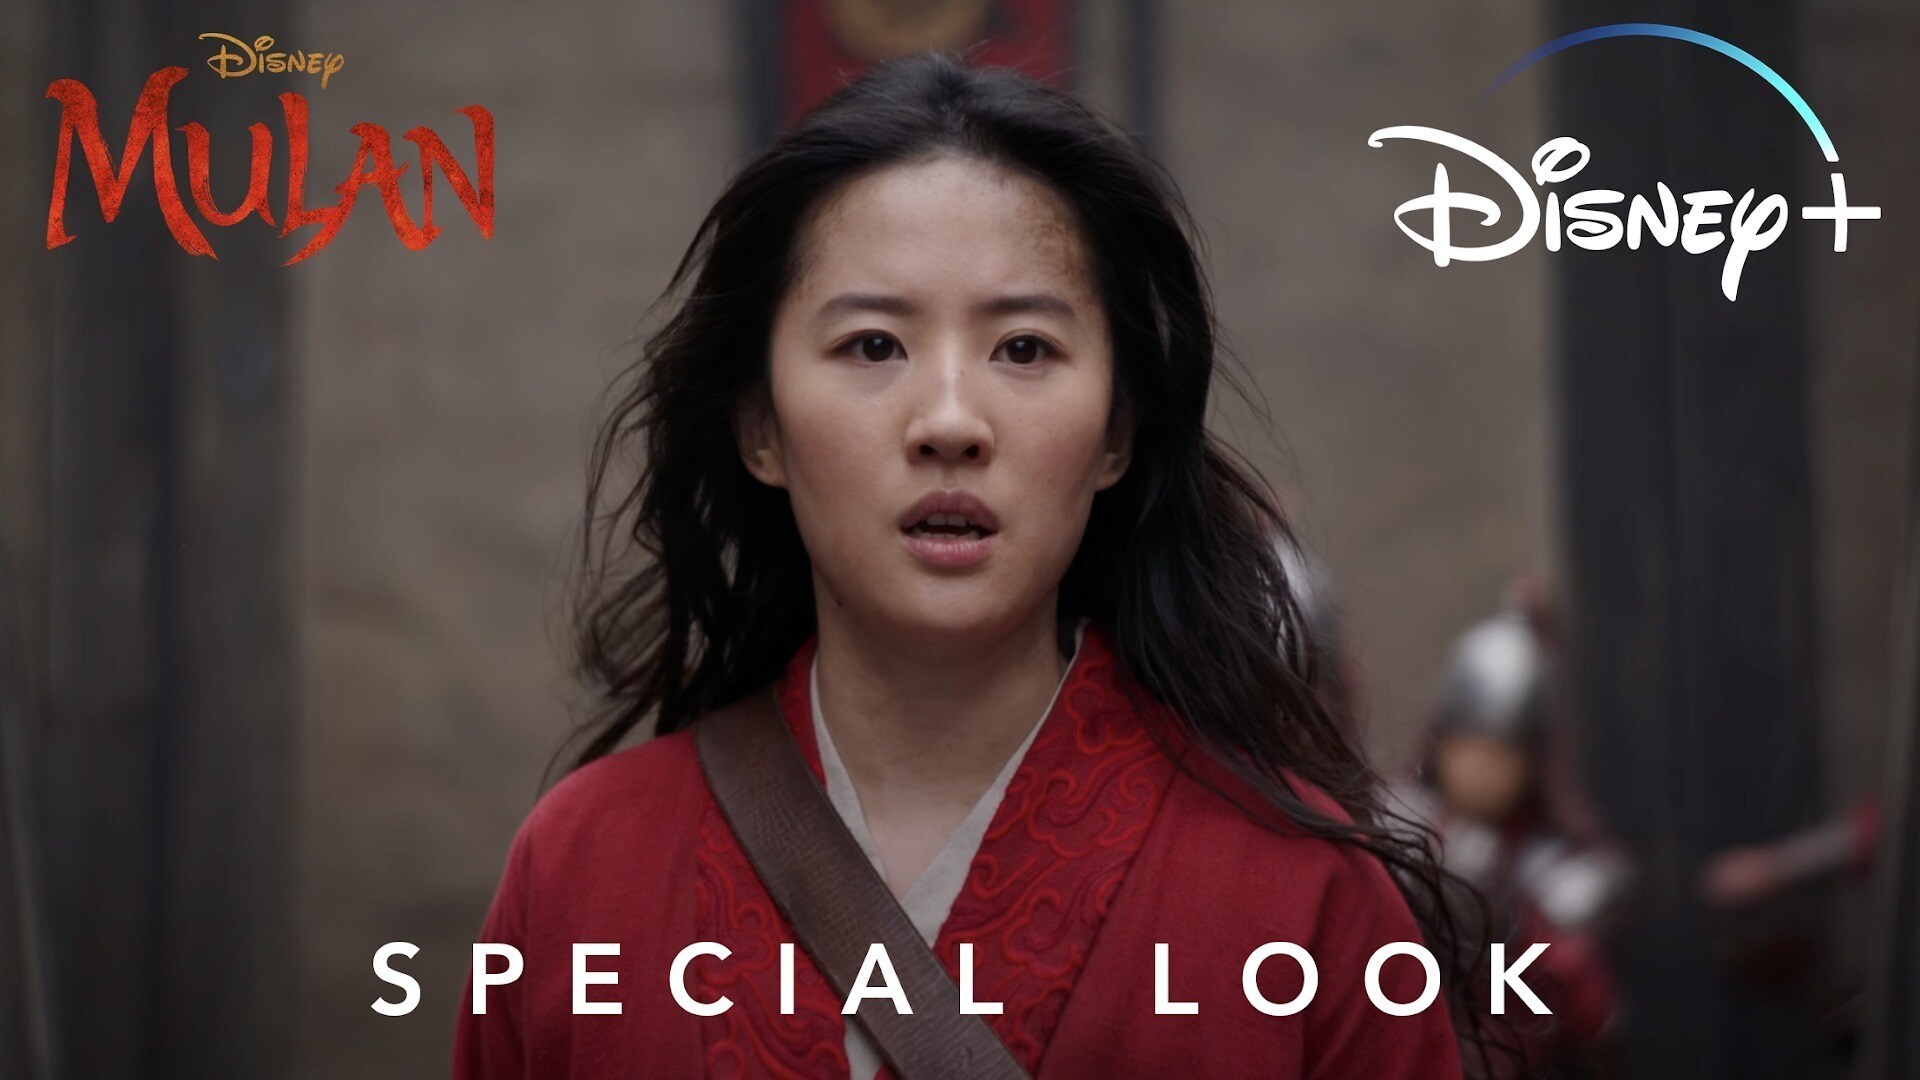 Start Streaming Friday | Mulan Special Look | Disney+